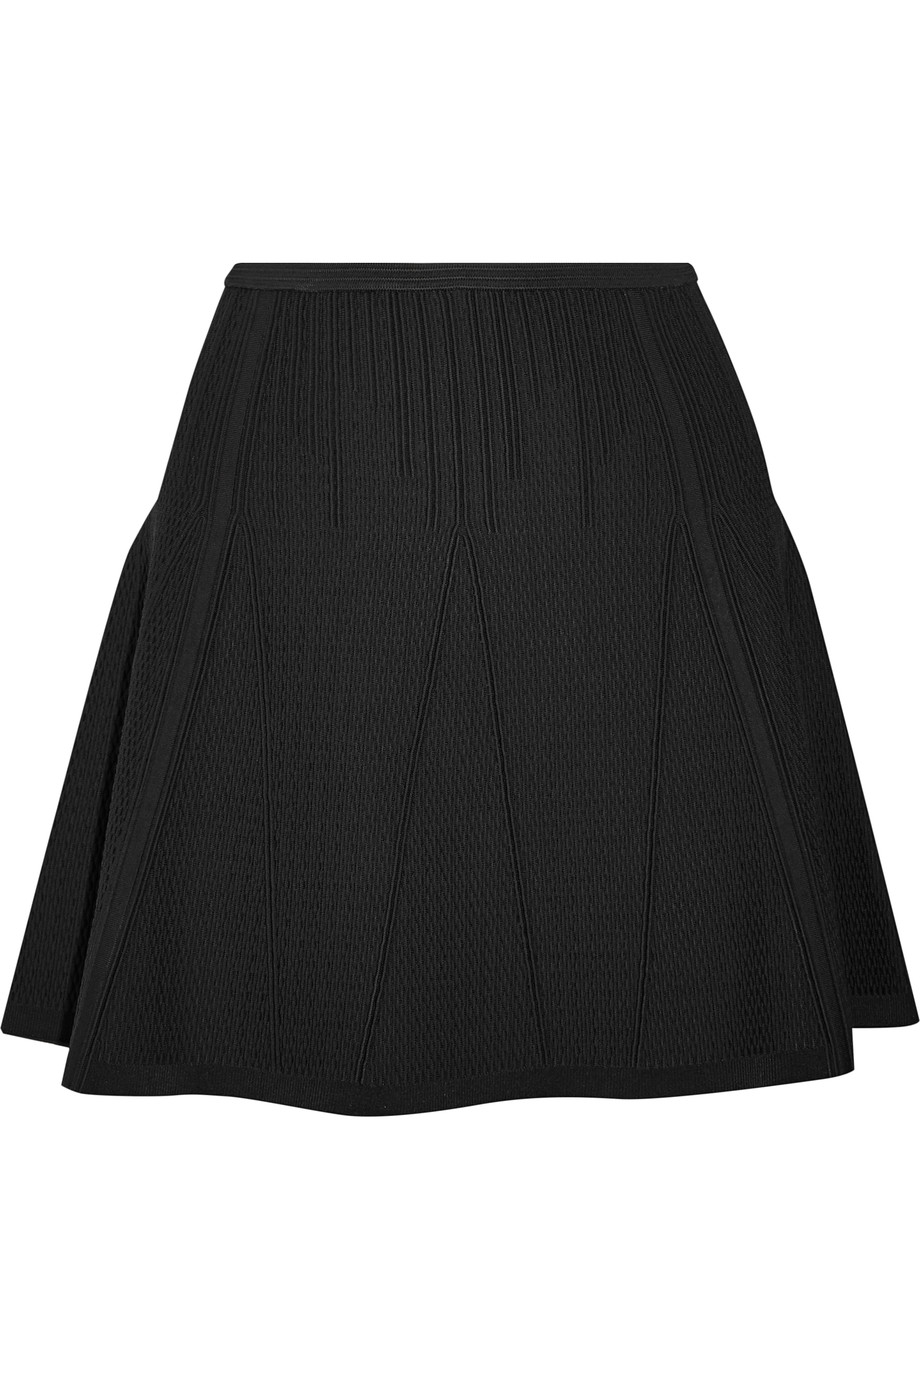 Diane Von Furstenberg Nellie Stretch-knit Mini Skirt | ModeSens